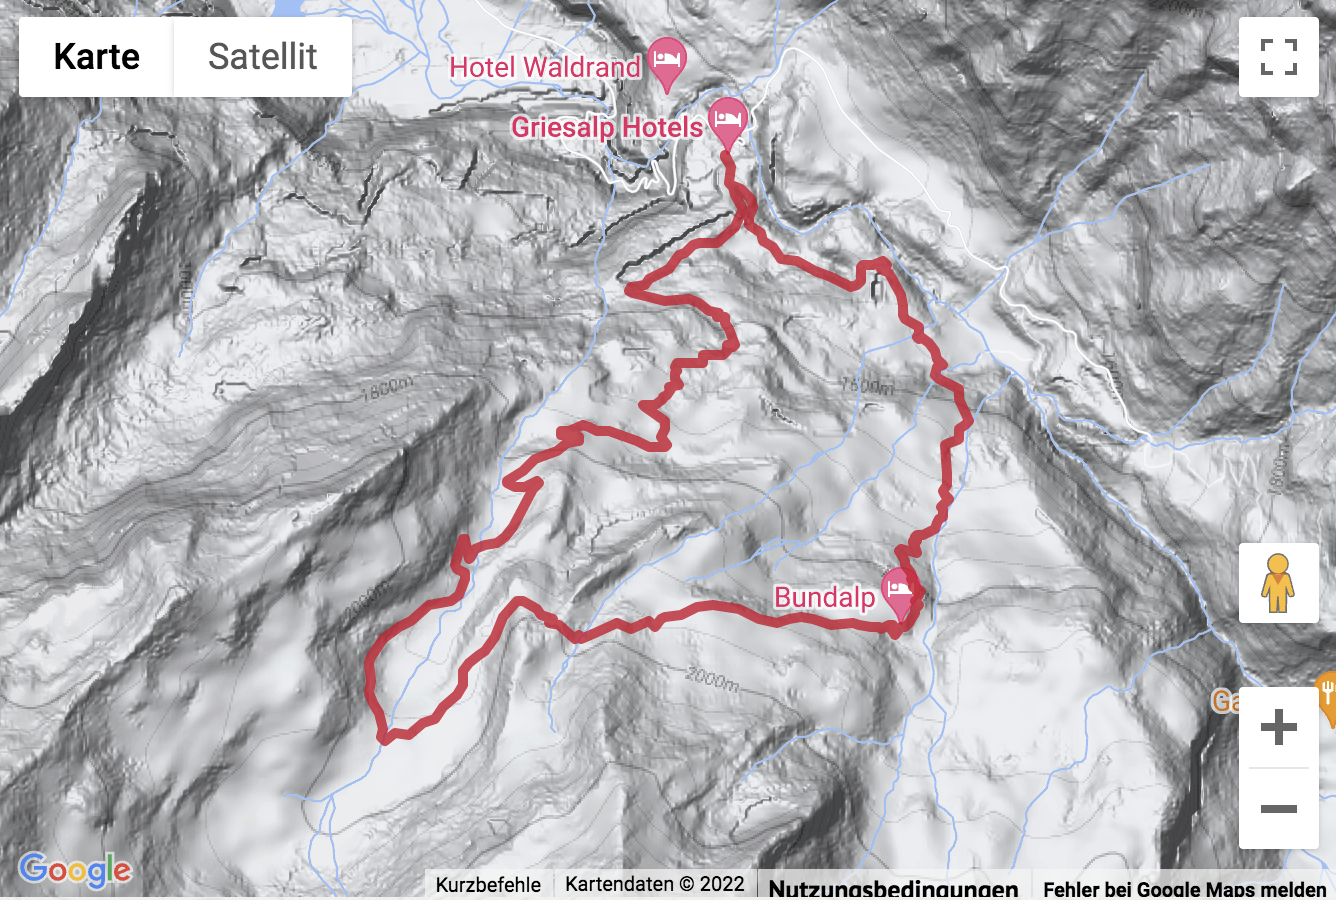 Carte de situation Rando de montagne de la Griesalp à la Bundalp